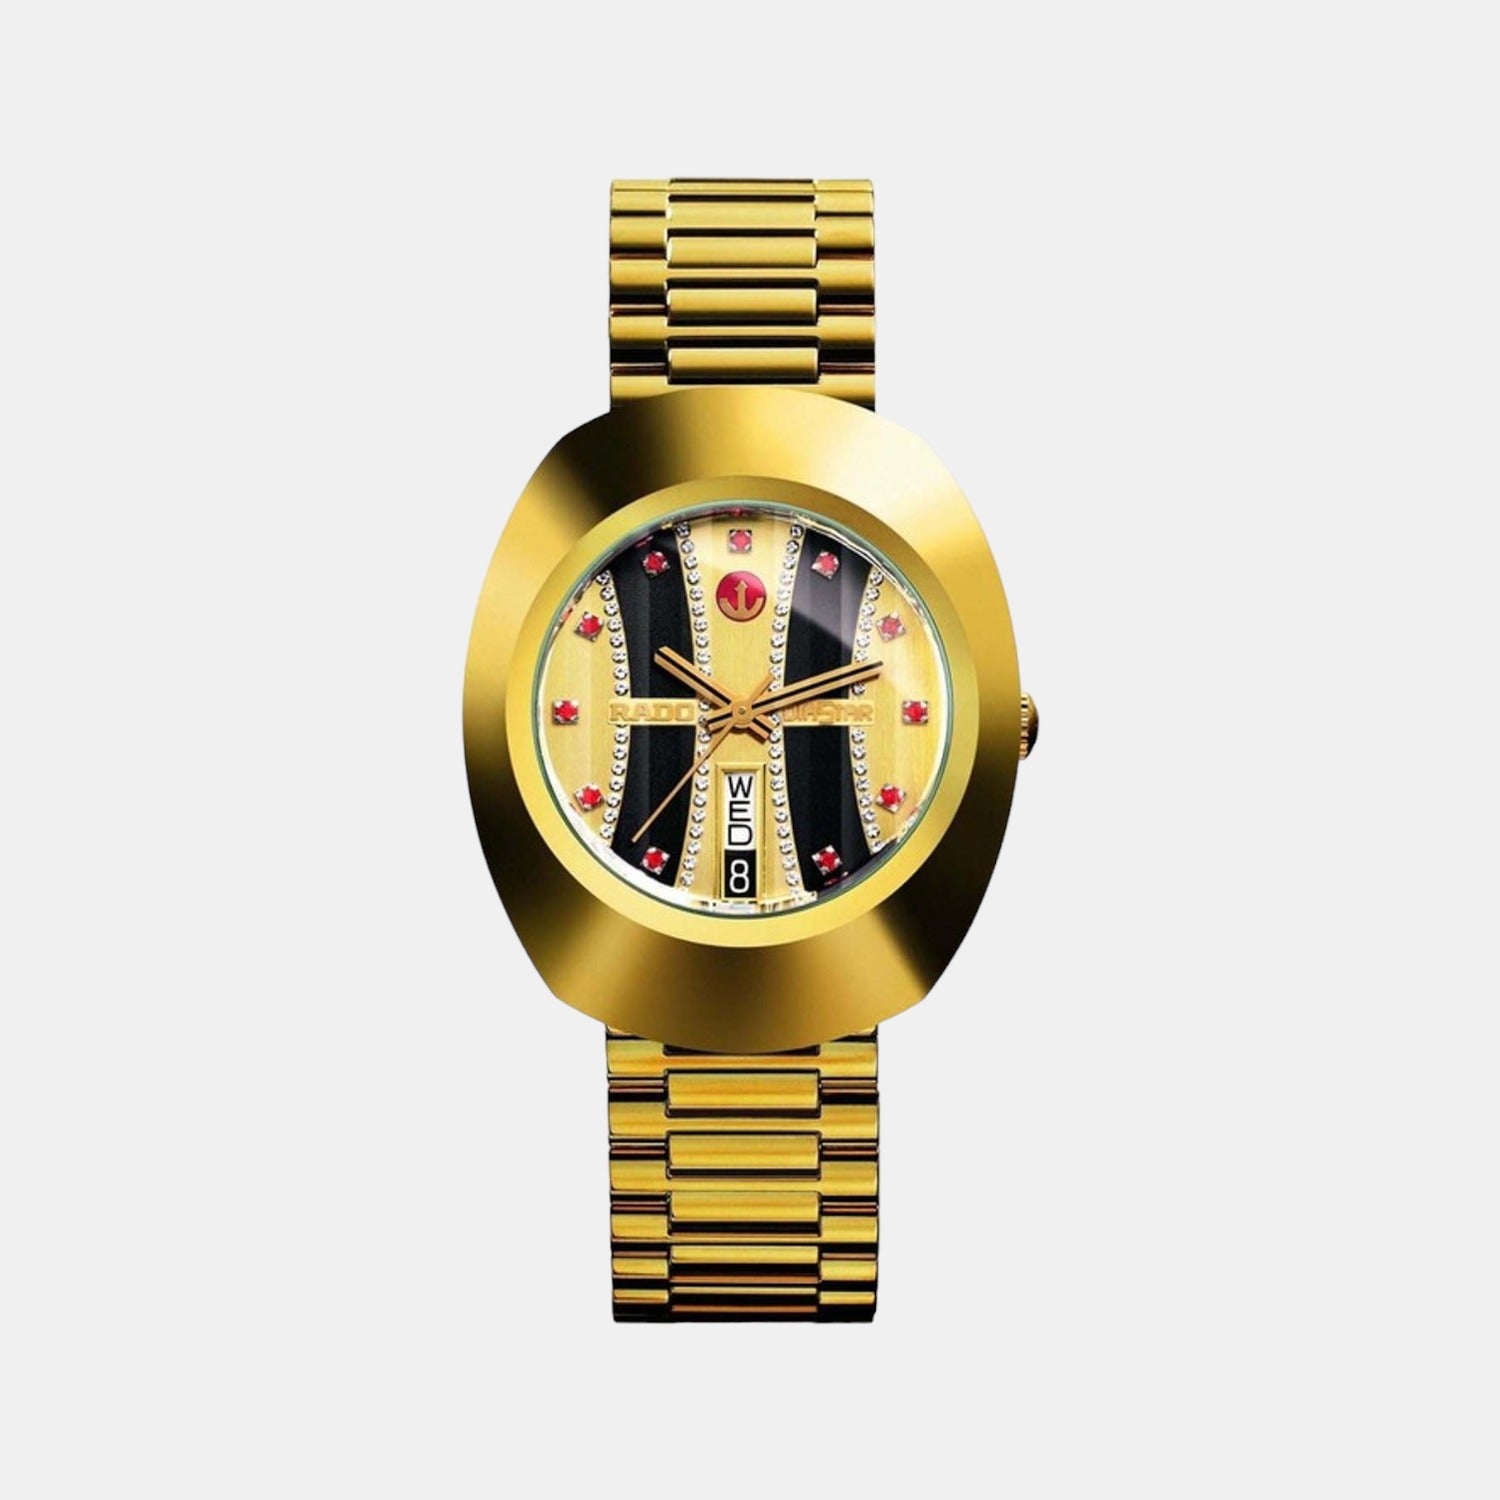 Rado Diastar Utomatic original | Watches for men, Luxury watches for men,  The originals